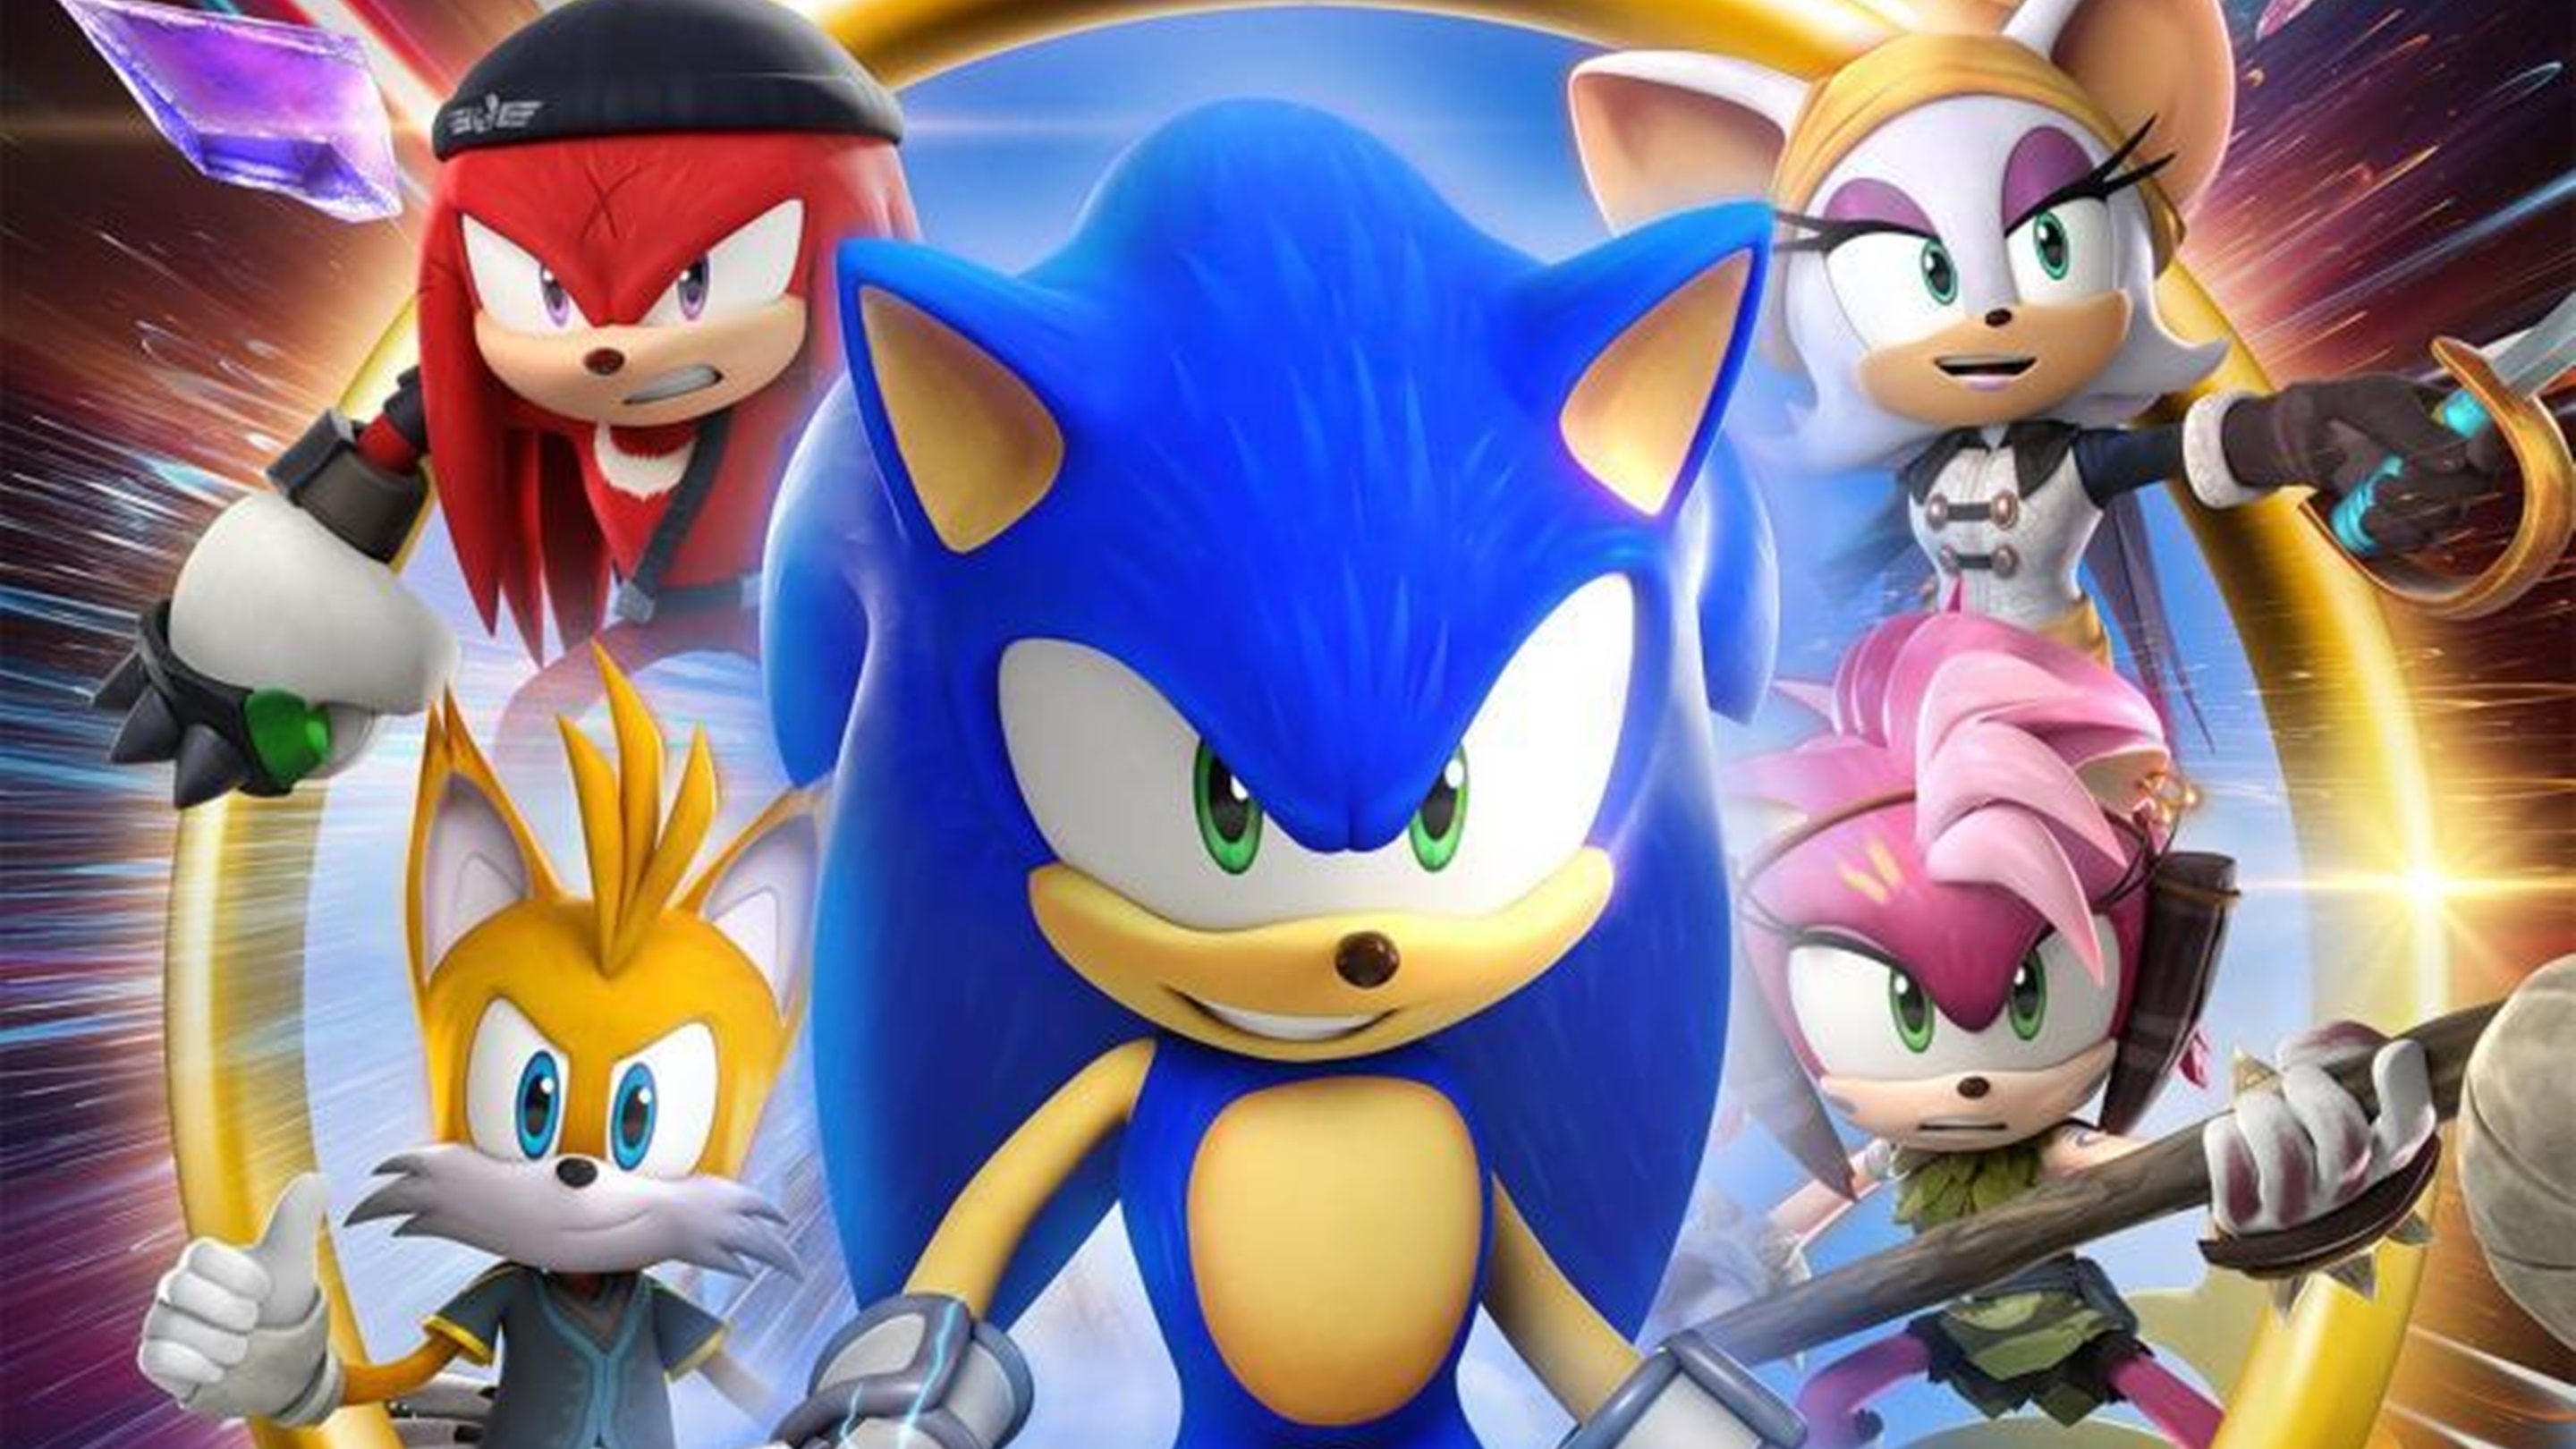 Sega confirma que Sonic Prime recibirá nuevos capítulos a finales de año -  Vandal